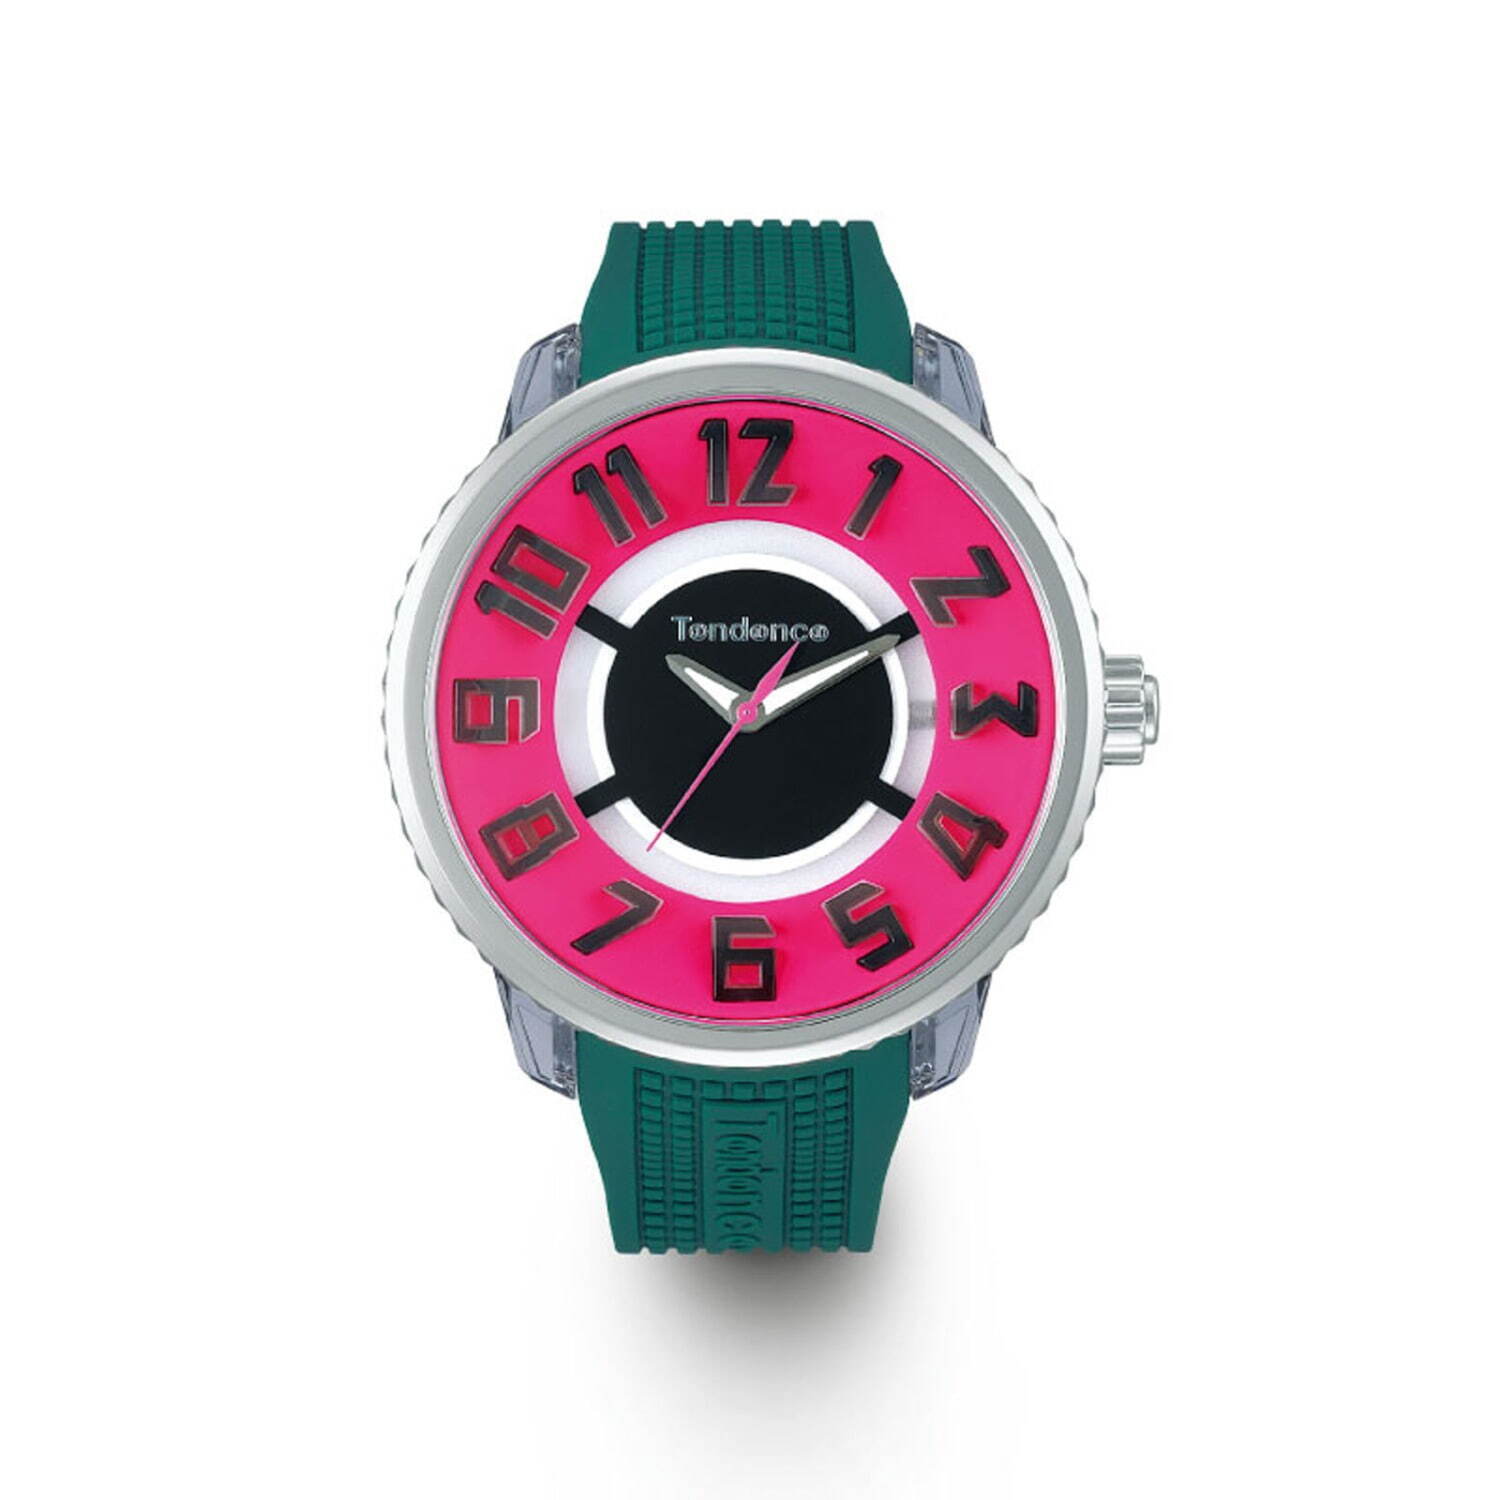 テンデンス“光る”腕時計「フラッシュ」新作ウォッチ、スニーカー着想のカラフルな配色 コピー